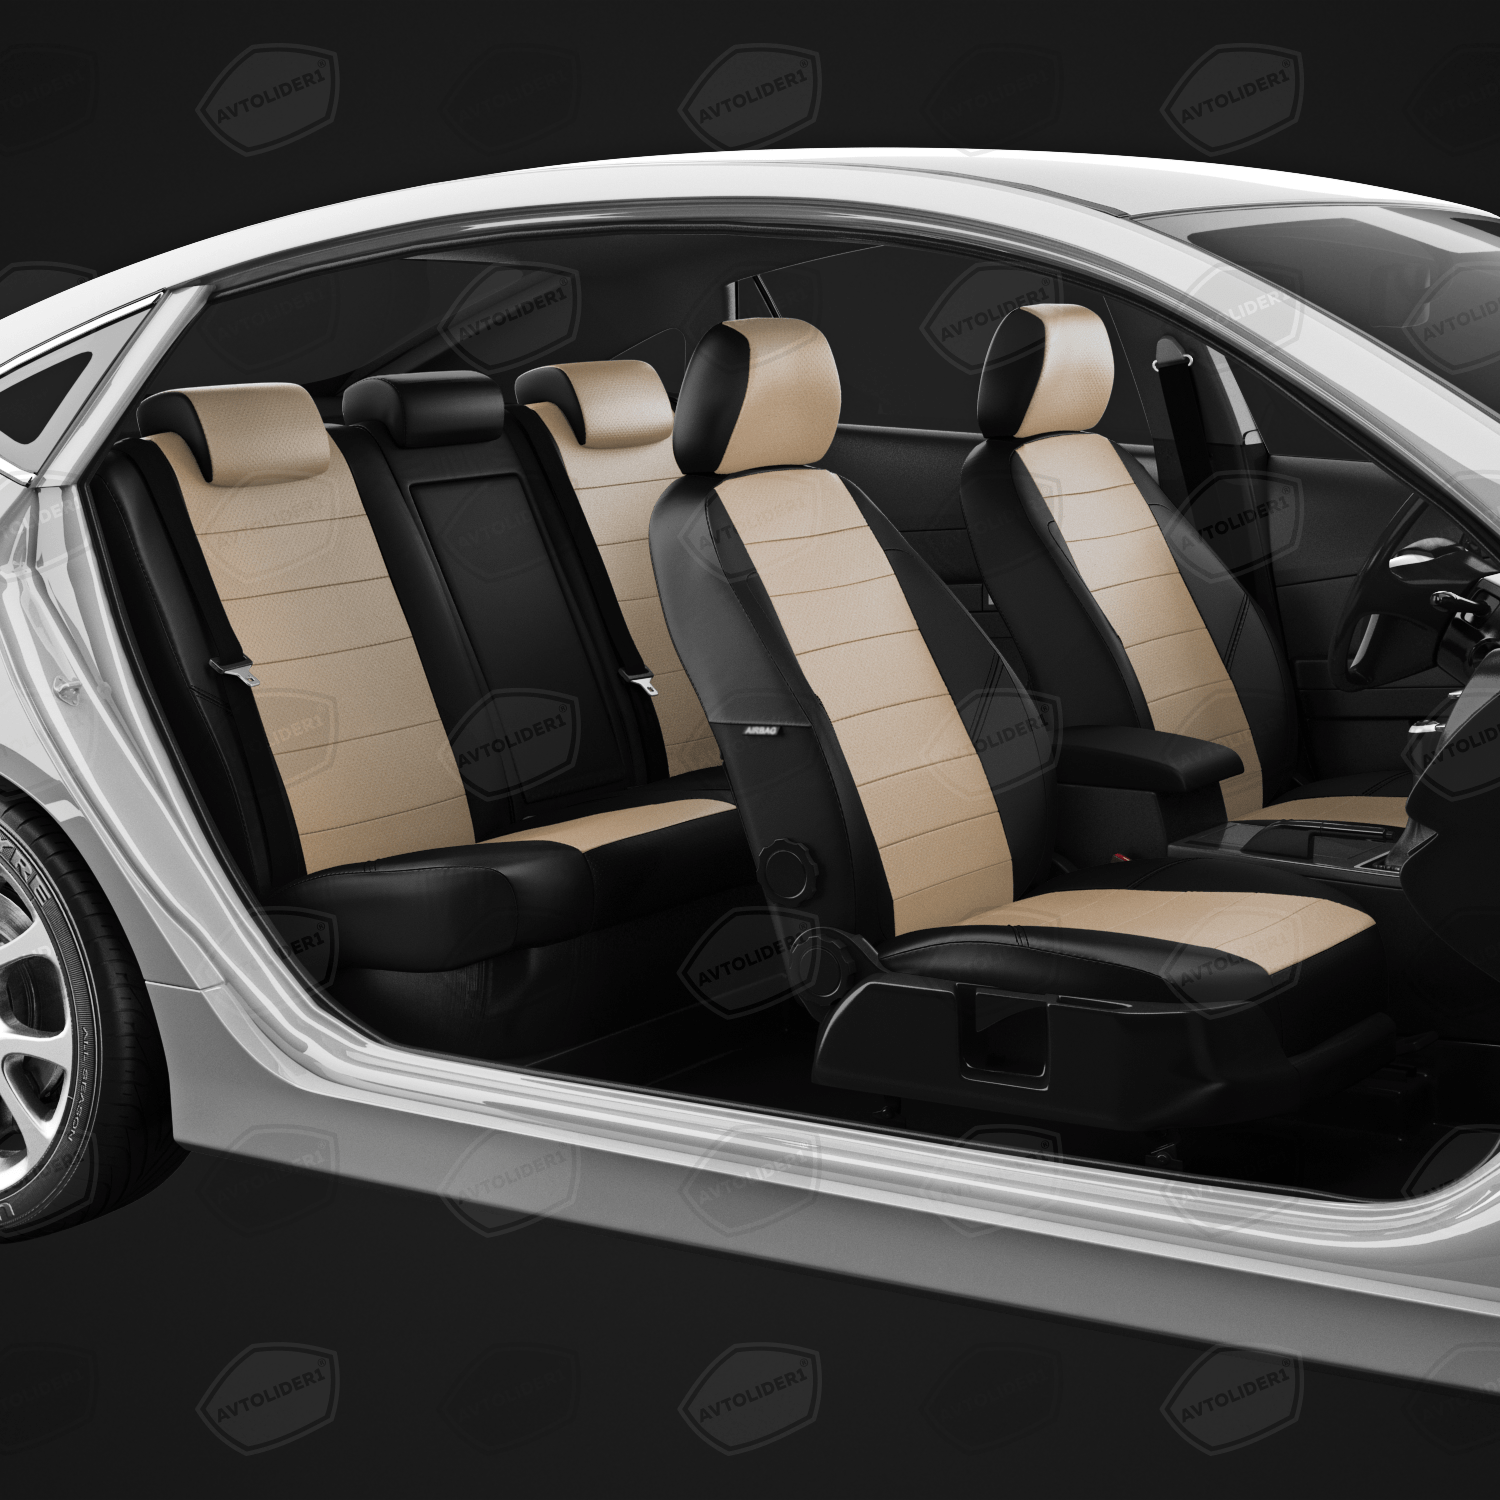 Чехлы на сиденья Ford Mondeo 5 (Форд Мондео 5) с 2014-н в седан хэтчбек универсал 5 мест